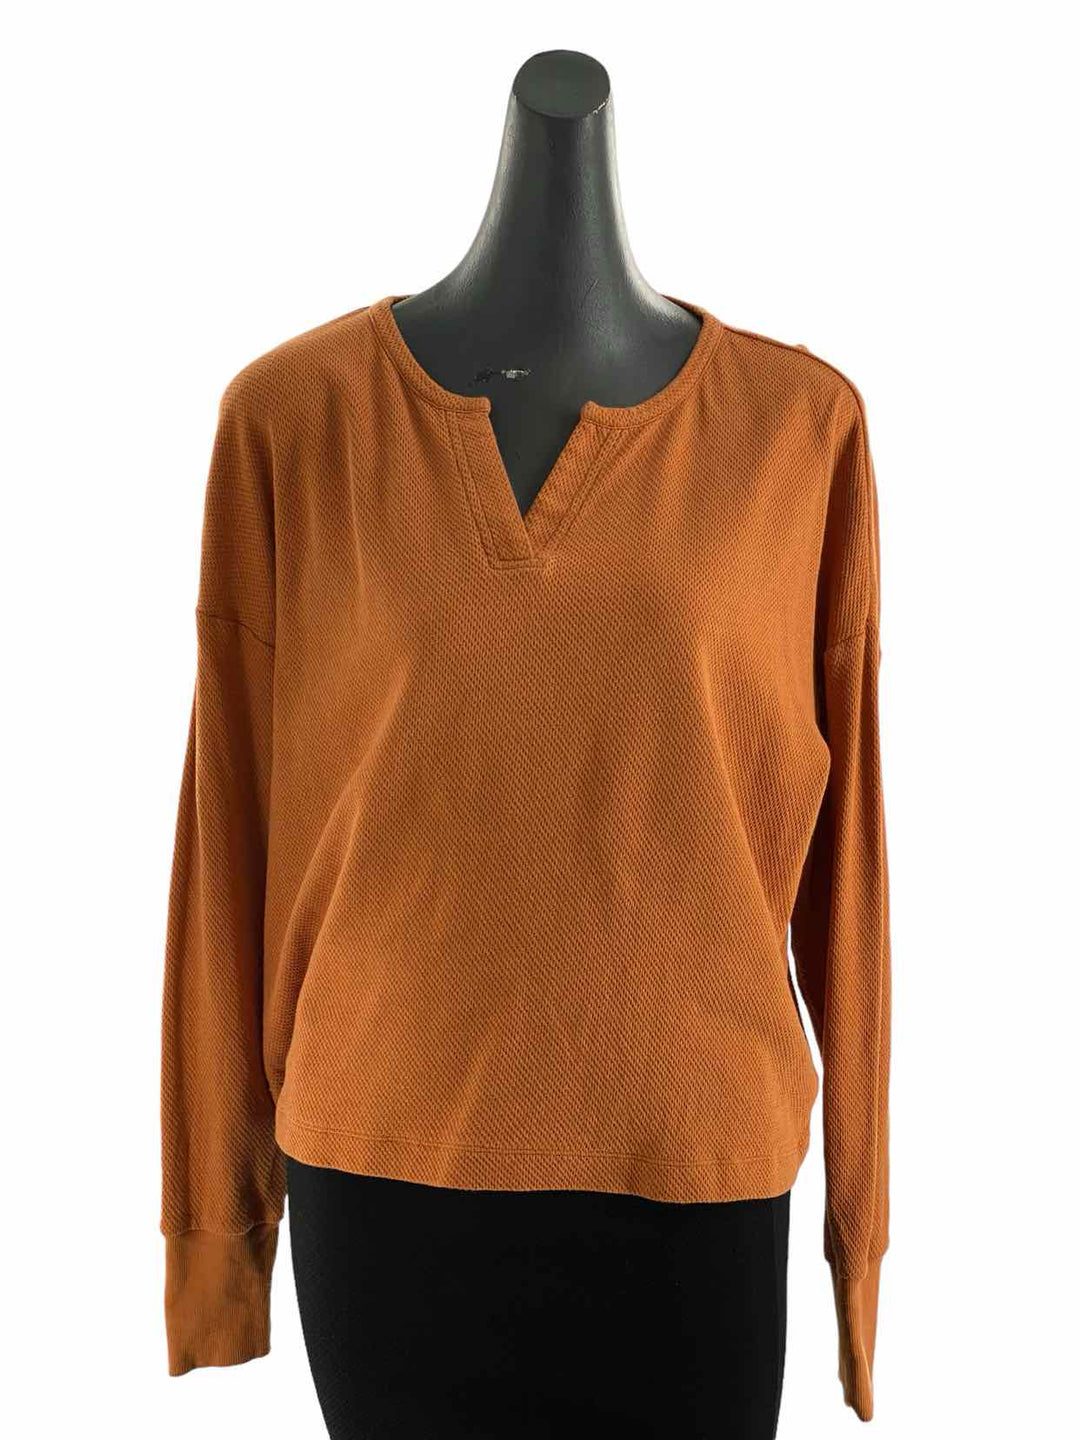 Cabi Size M Burnt Orange Long Sleeve Shirts